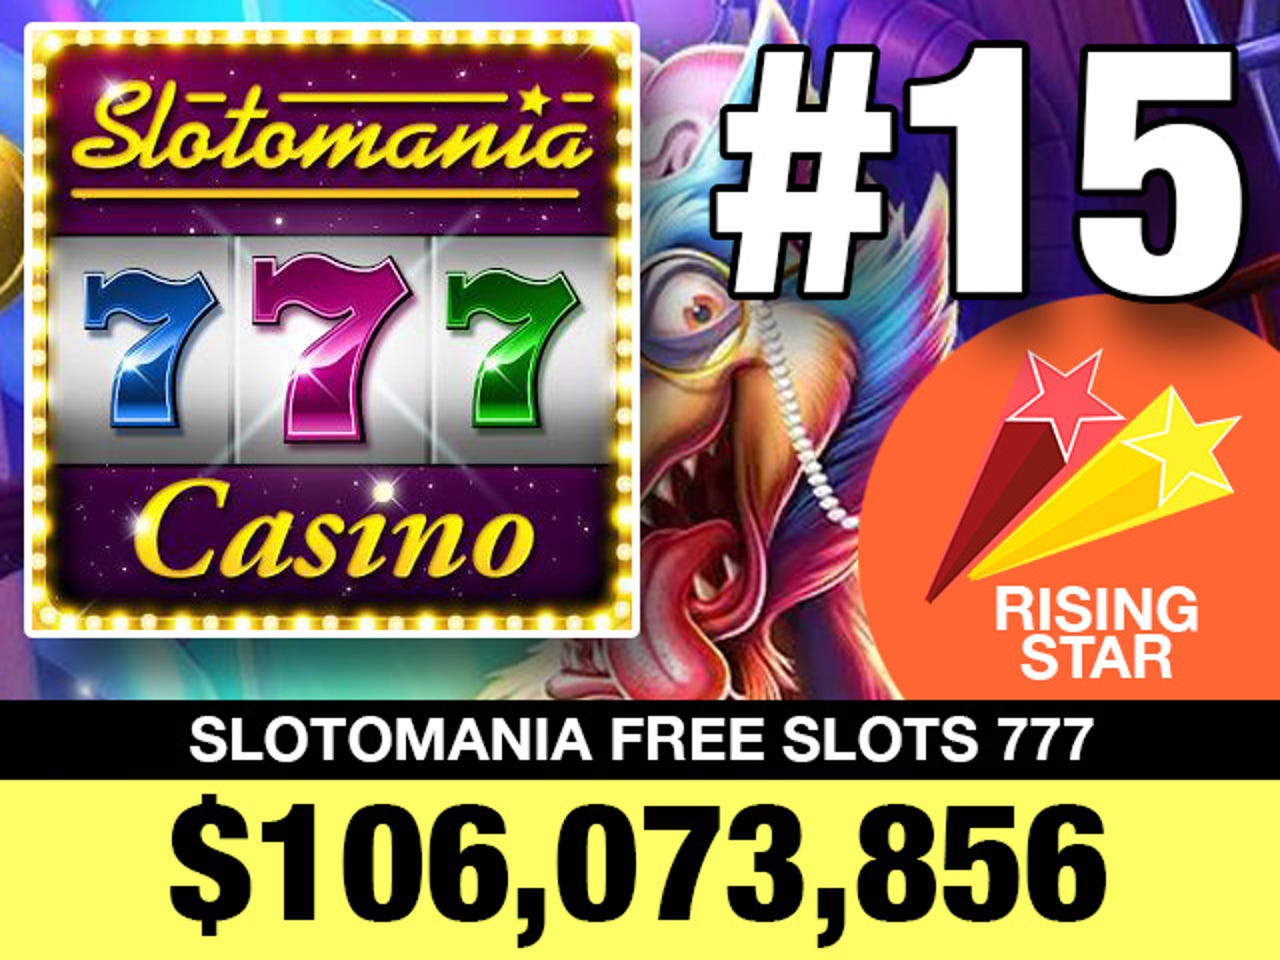 15-slotomania-free-slots-777.jpg